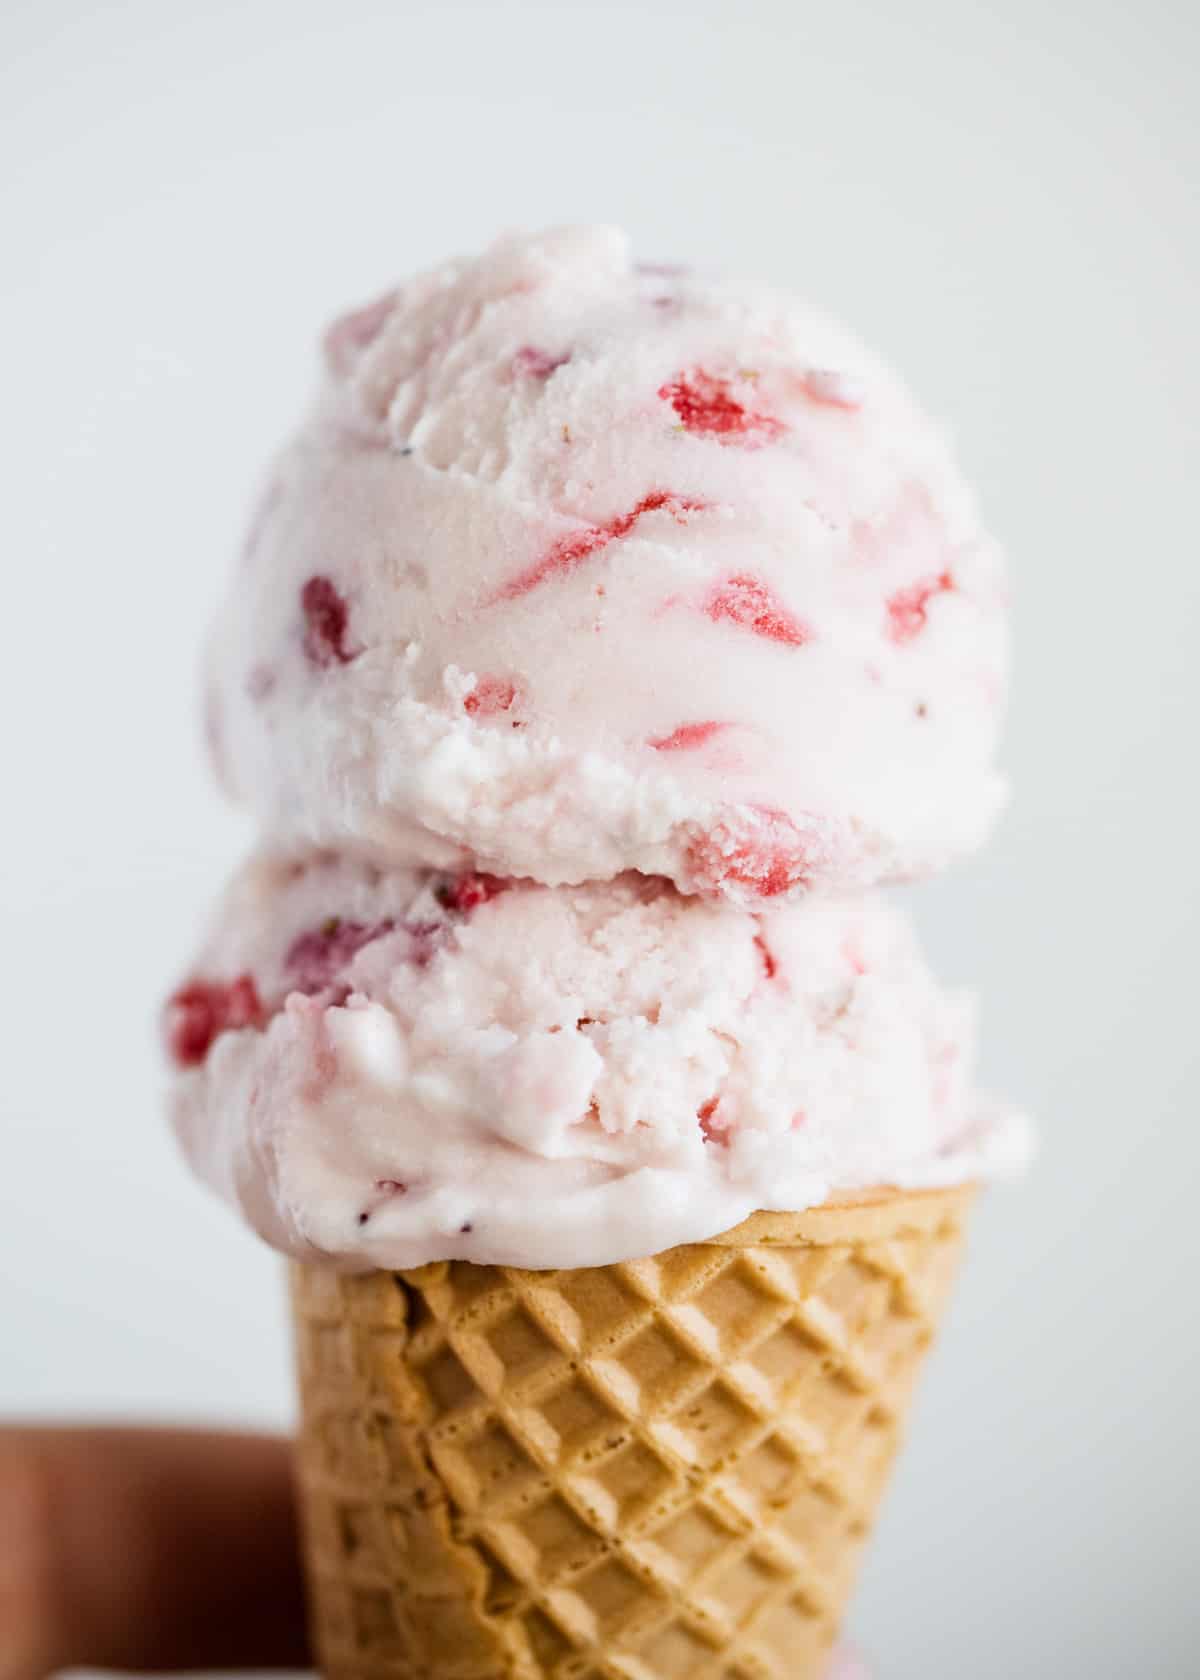 Strawberry ice cream in cone.